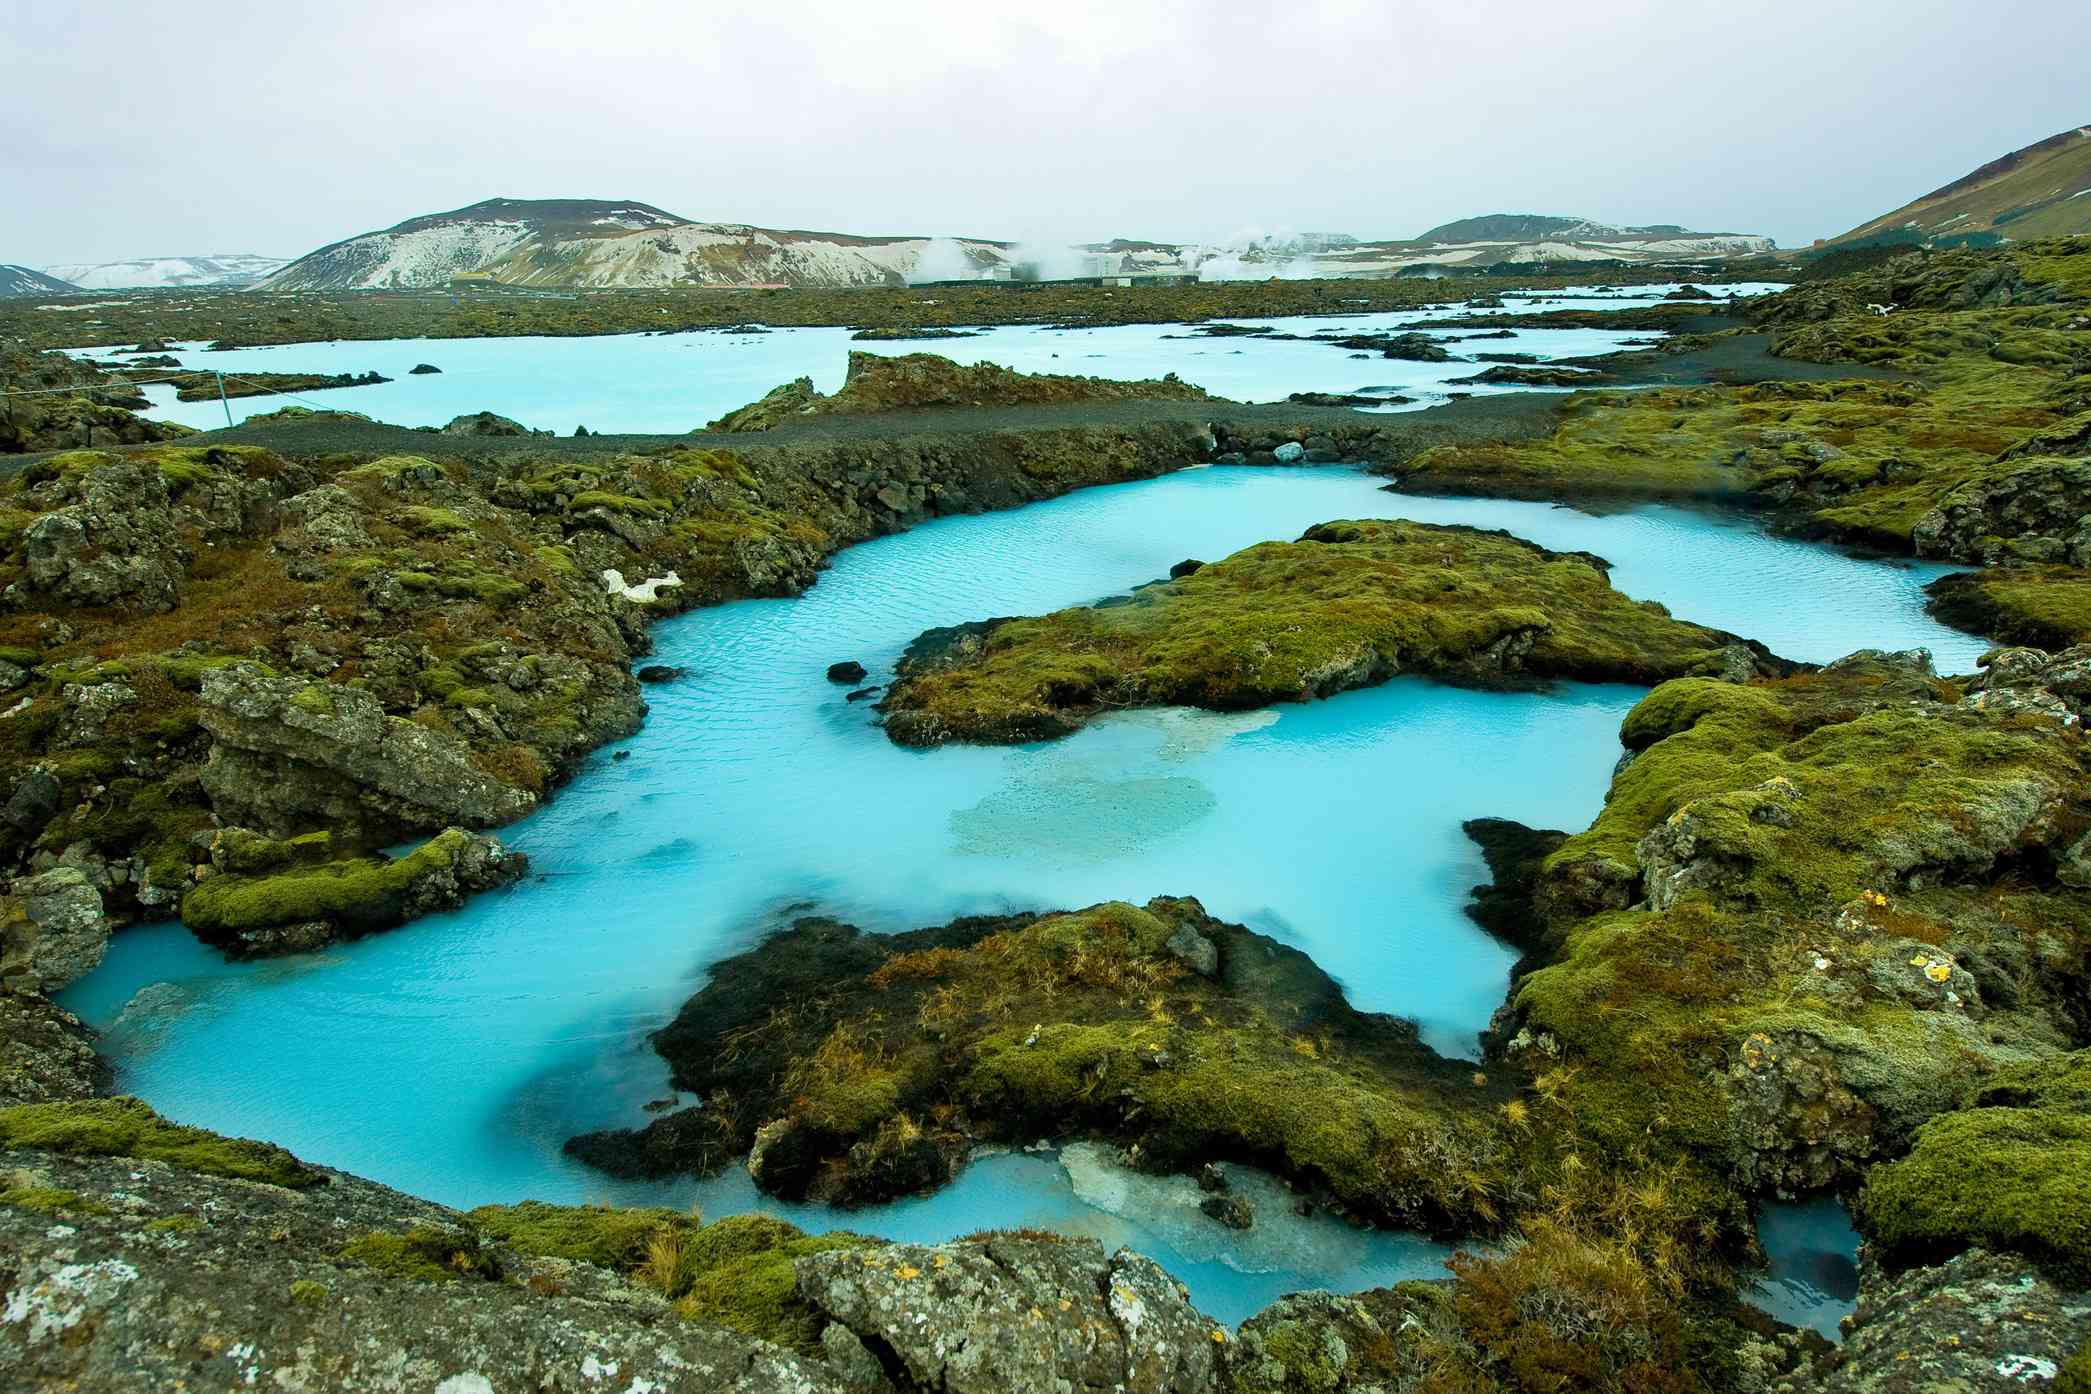 青苔覆盖的熔岩石之间流淌着蓝色的水